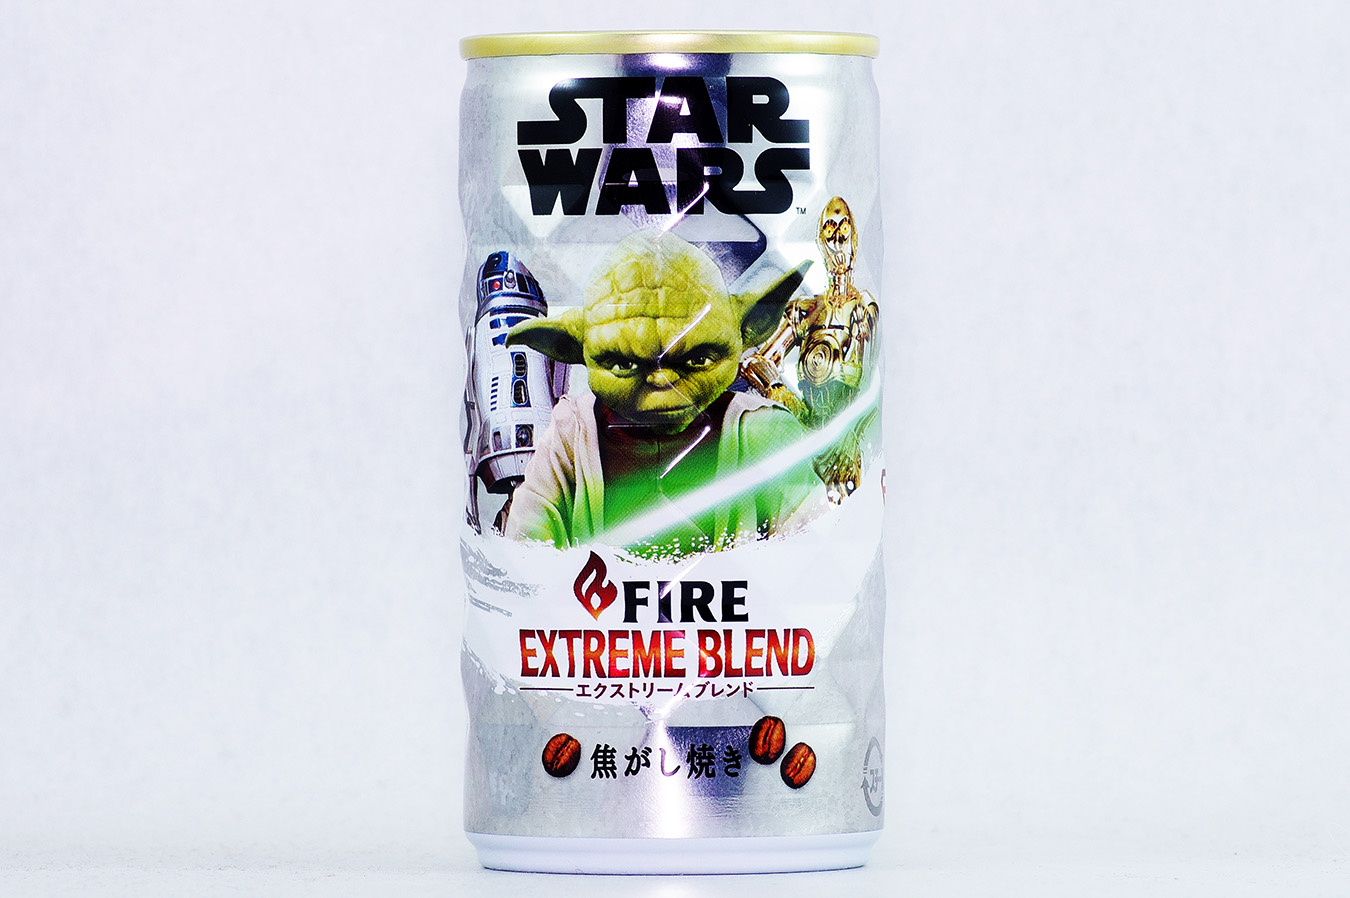 FIRE エクストリームブレンド スター・ウォーズデザイン缶 ヨーダ 2016年12月